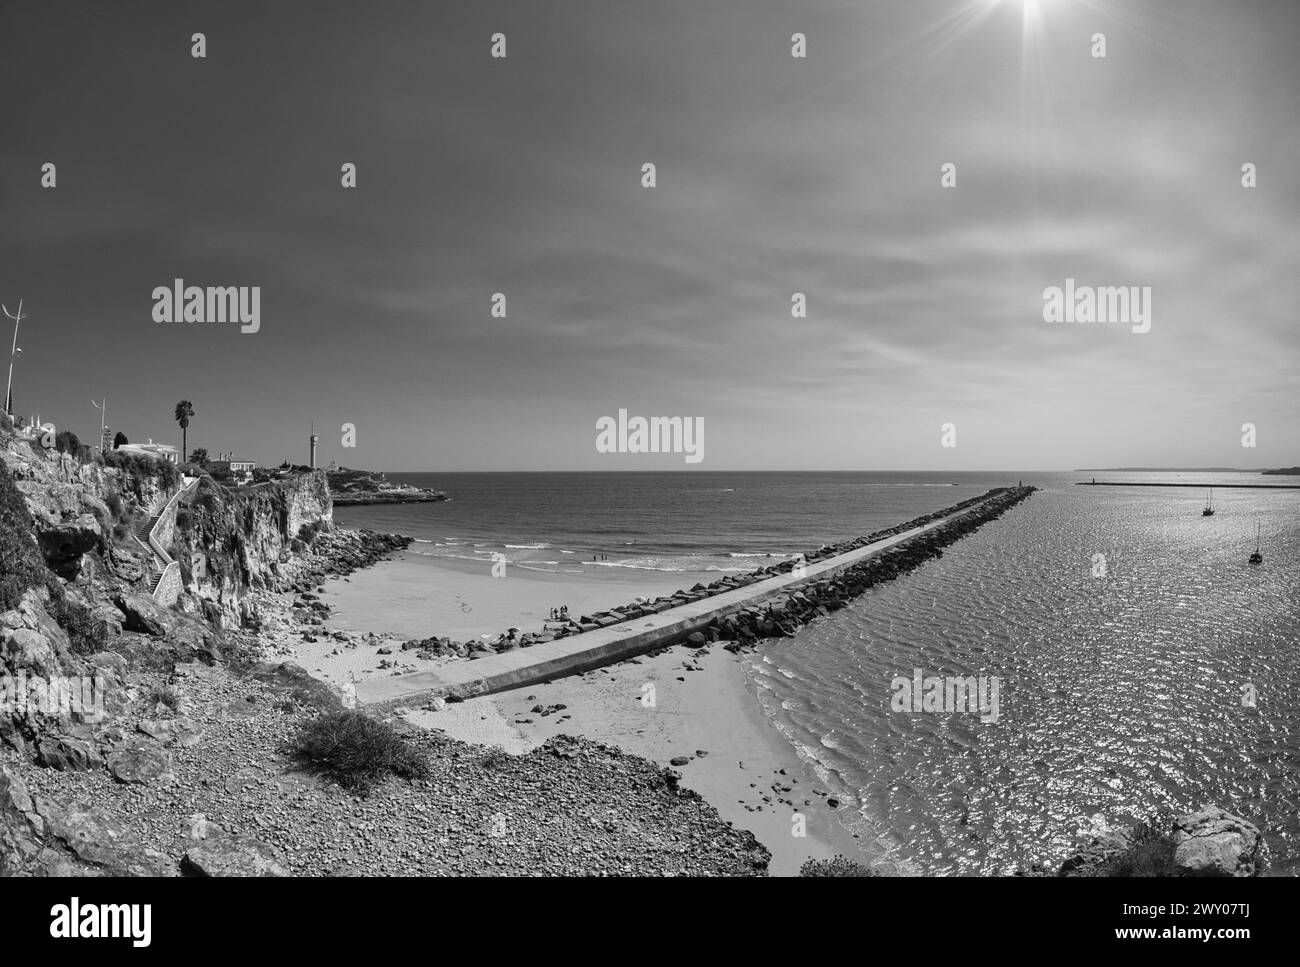 Plage de Molhe à Ferragudo, Algarve. Côte rocheuse et falaise et vagues océaniques. Photographie noir et blanc. Banque D'Images